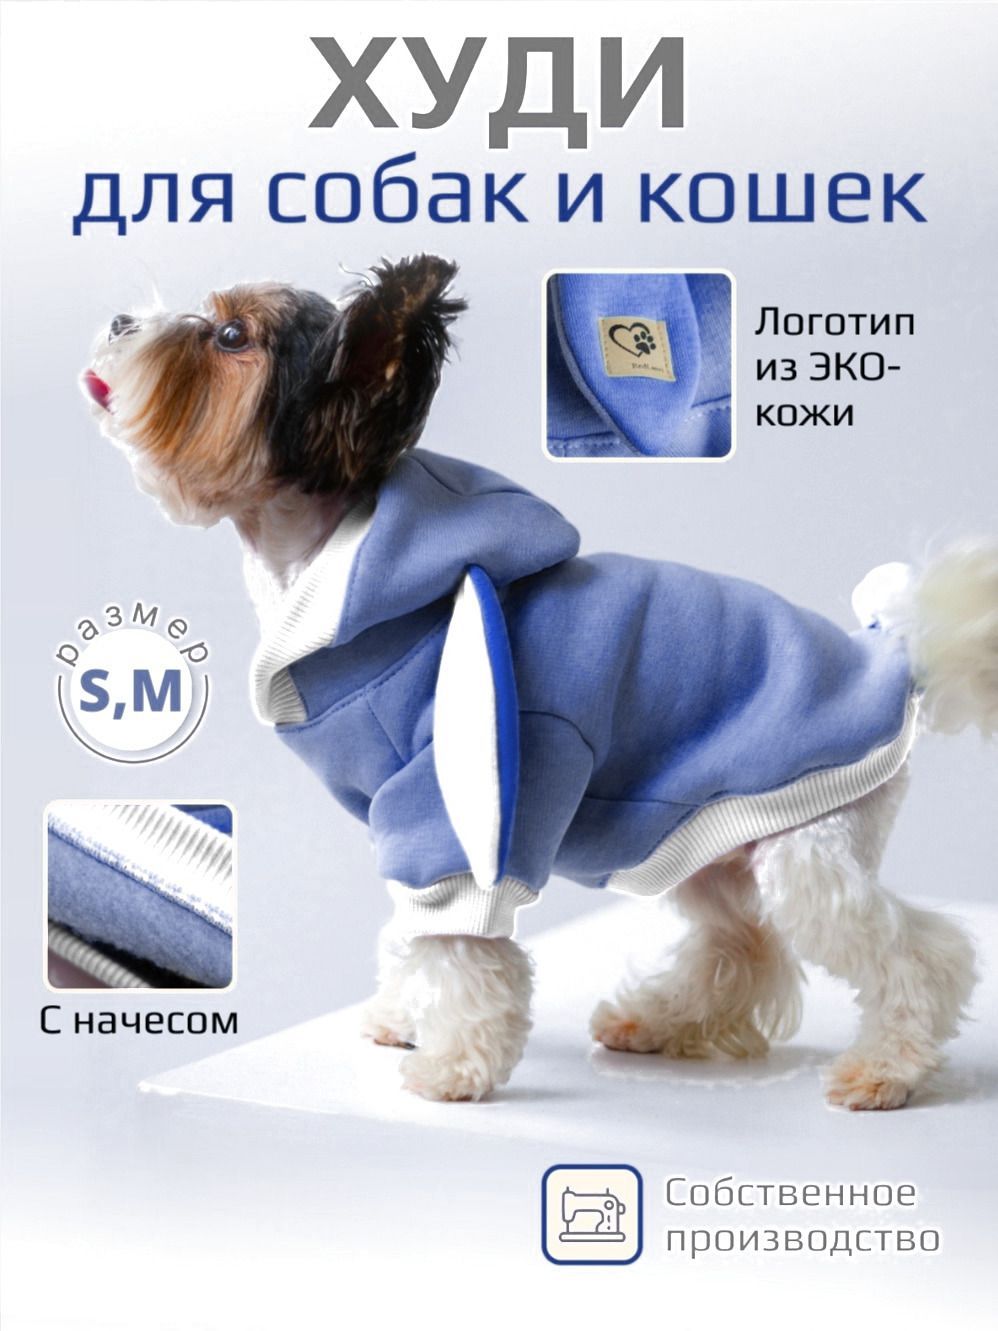 Таблицы размеров одежды для собак